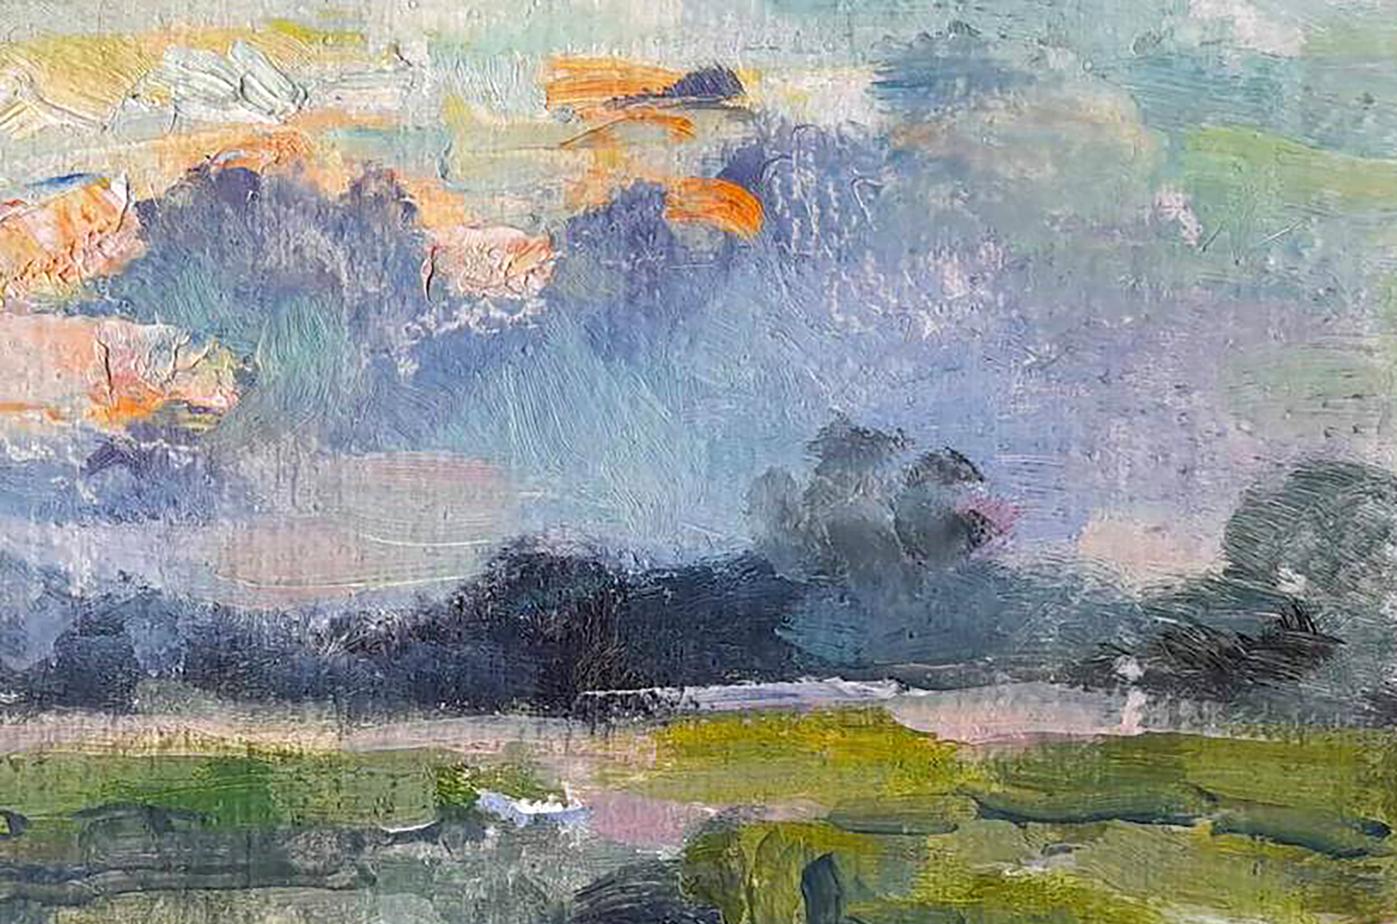 Oil painting Rest on the pond Kovalenko Ivan Mikhailovich